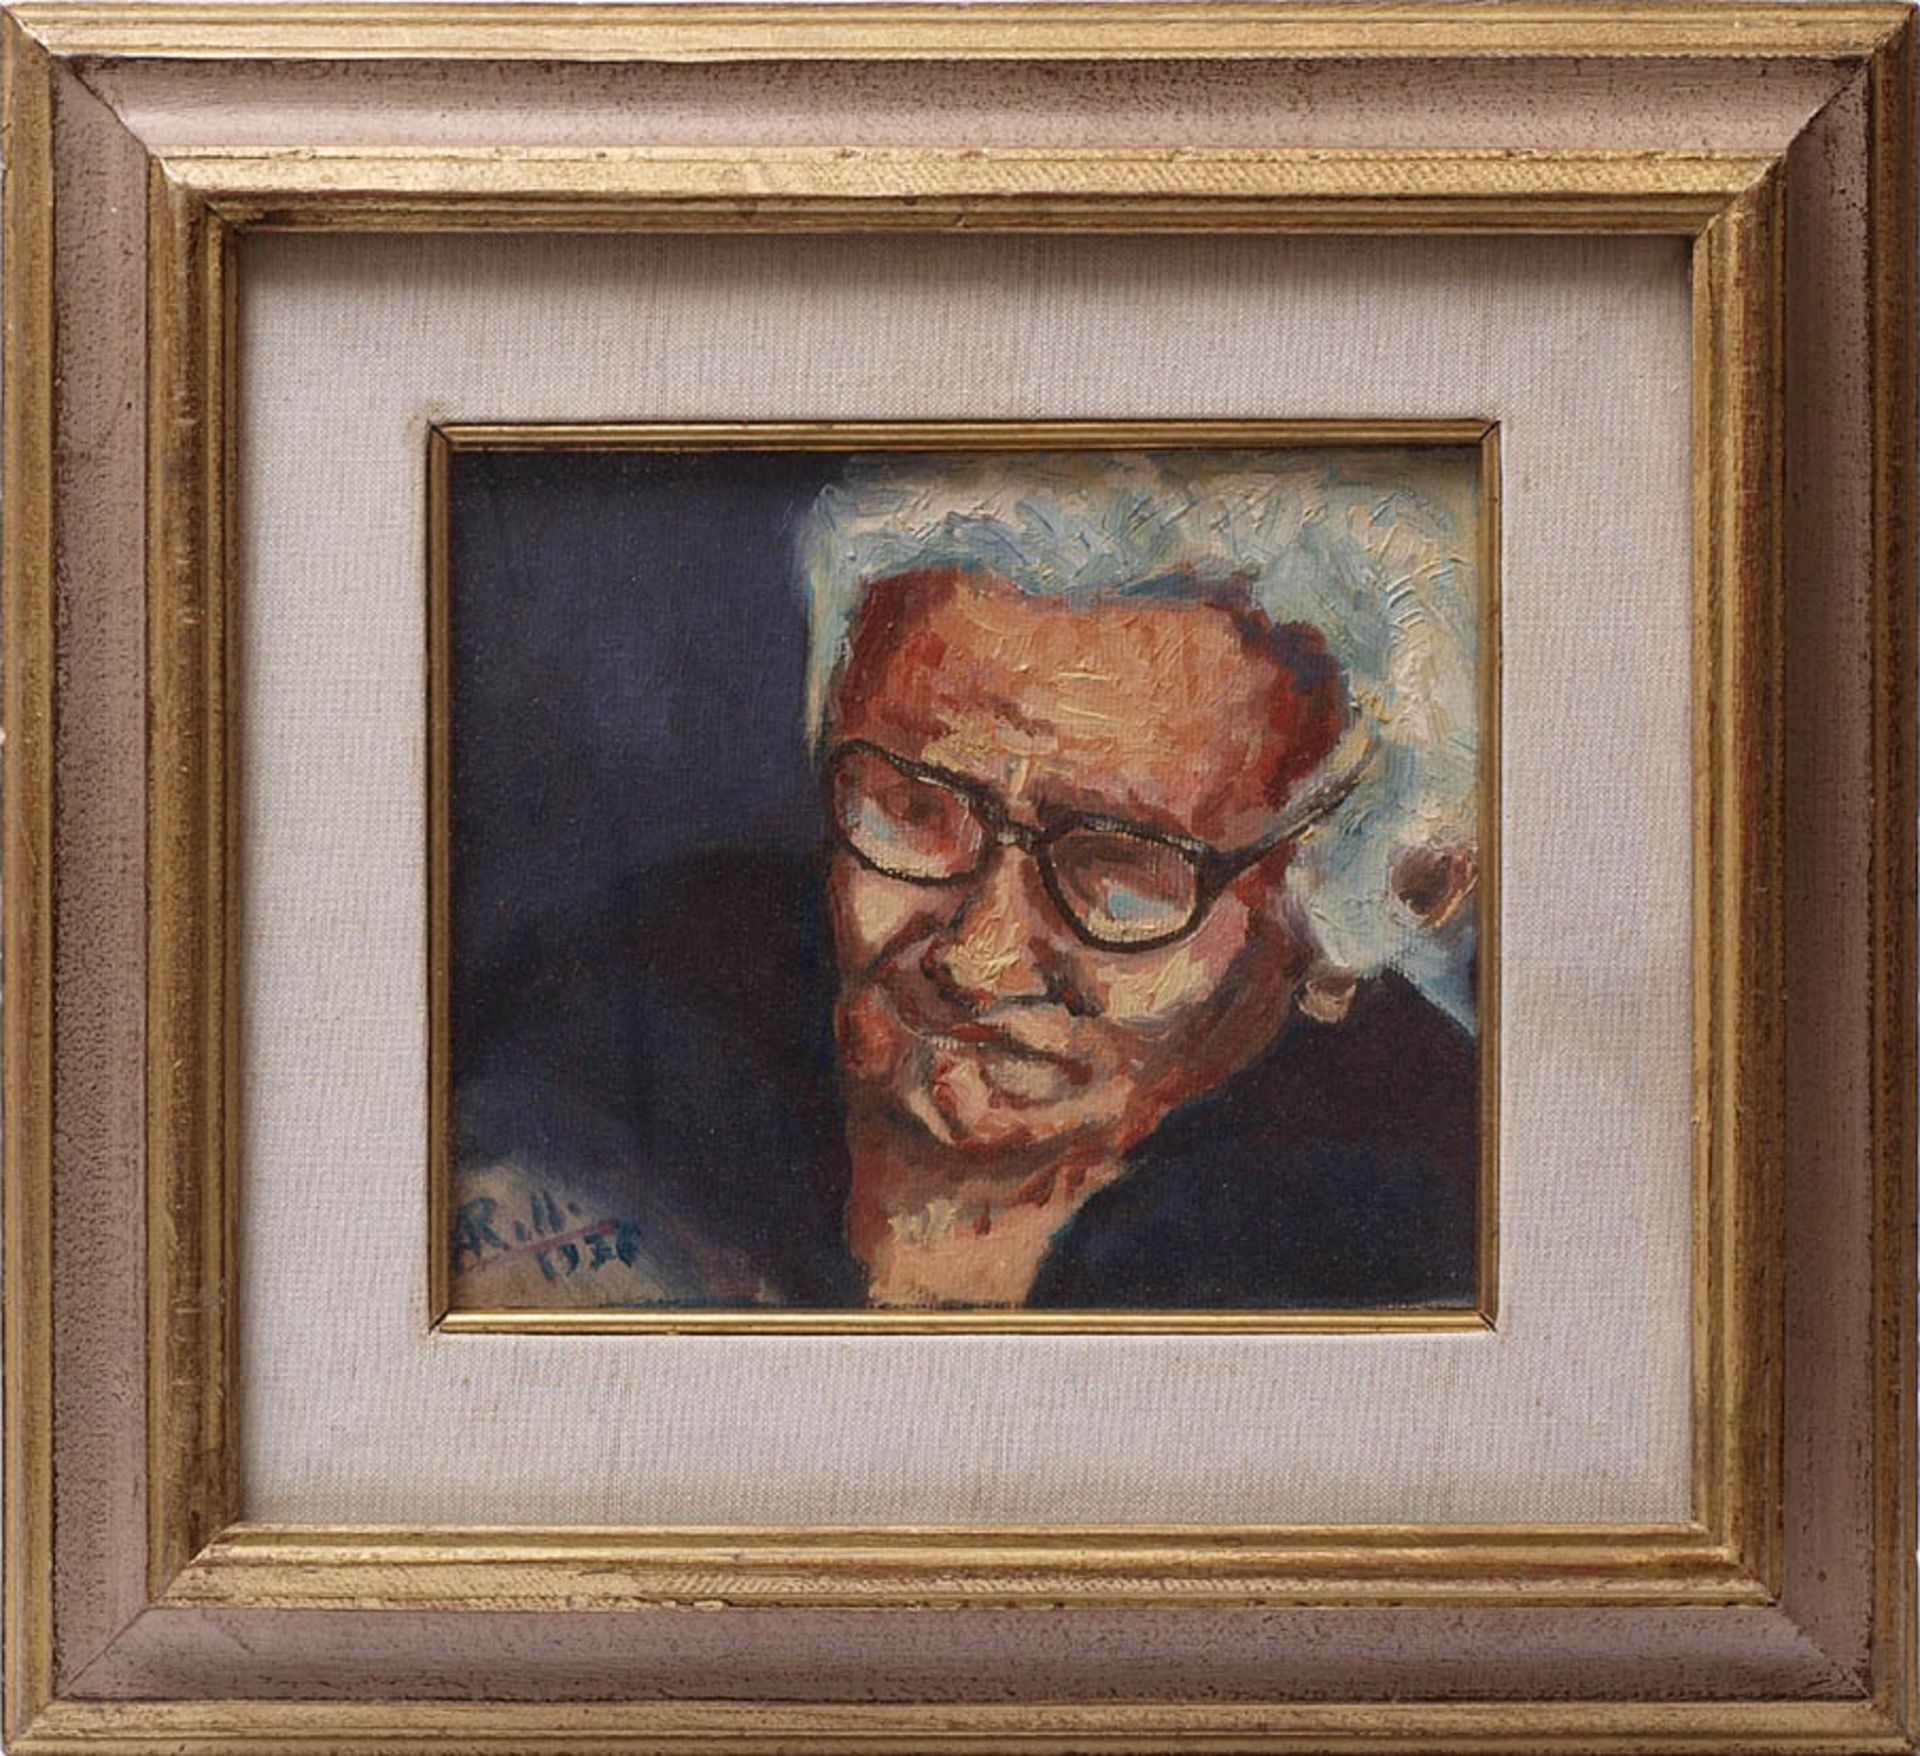 Portraitist, 30er JahreBrustbild einer alten Frau mit Brille. Impressionistische Bildauffassung.